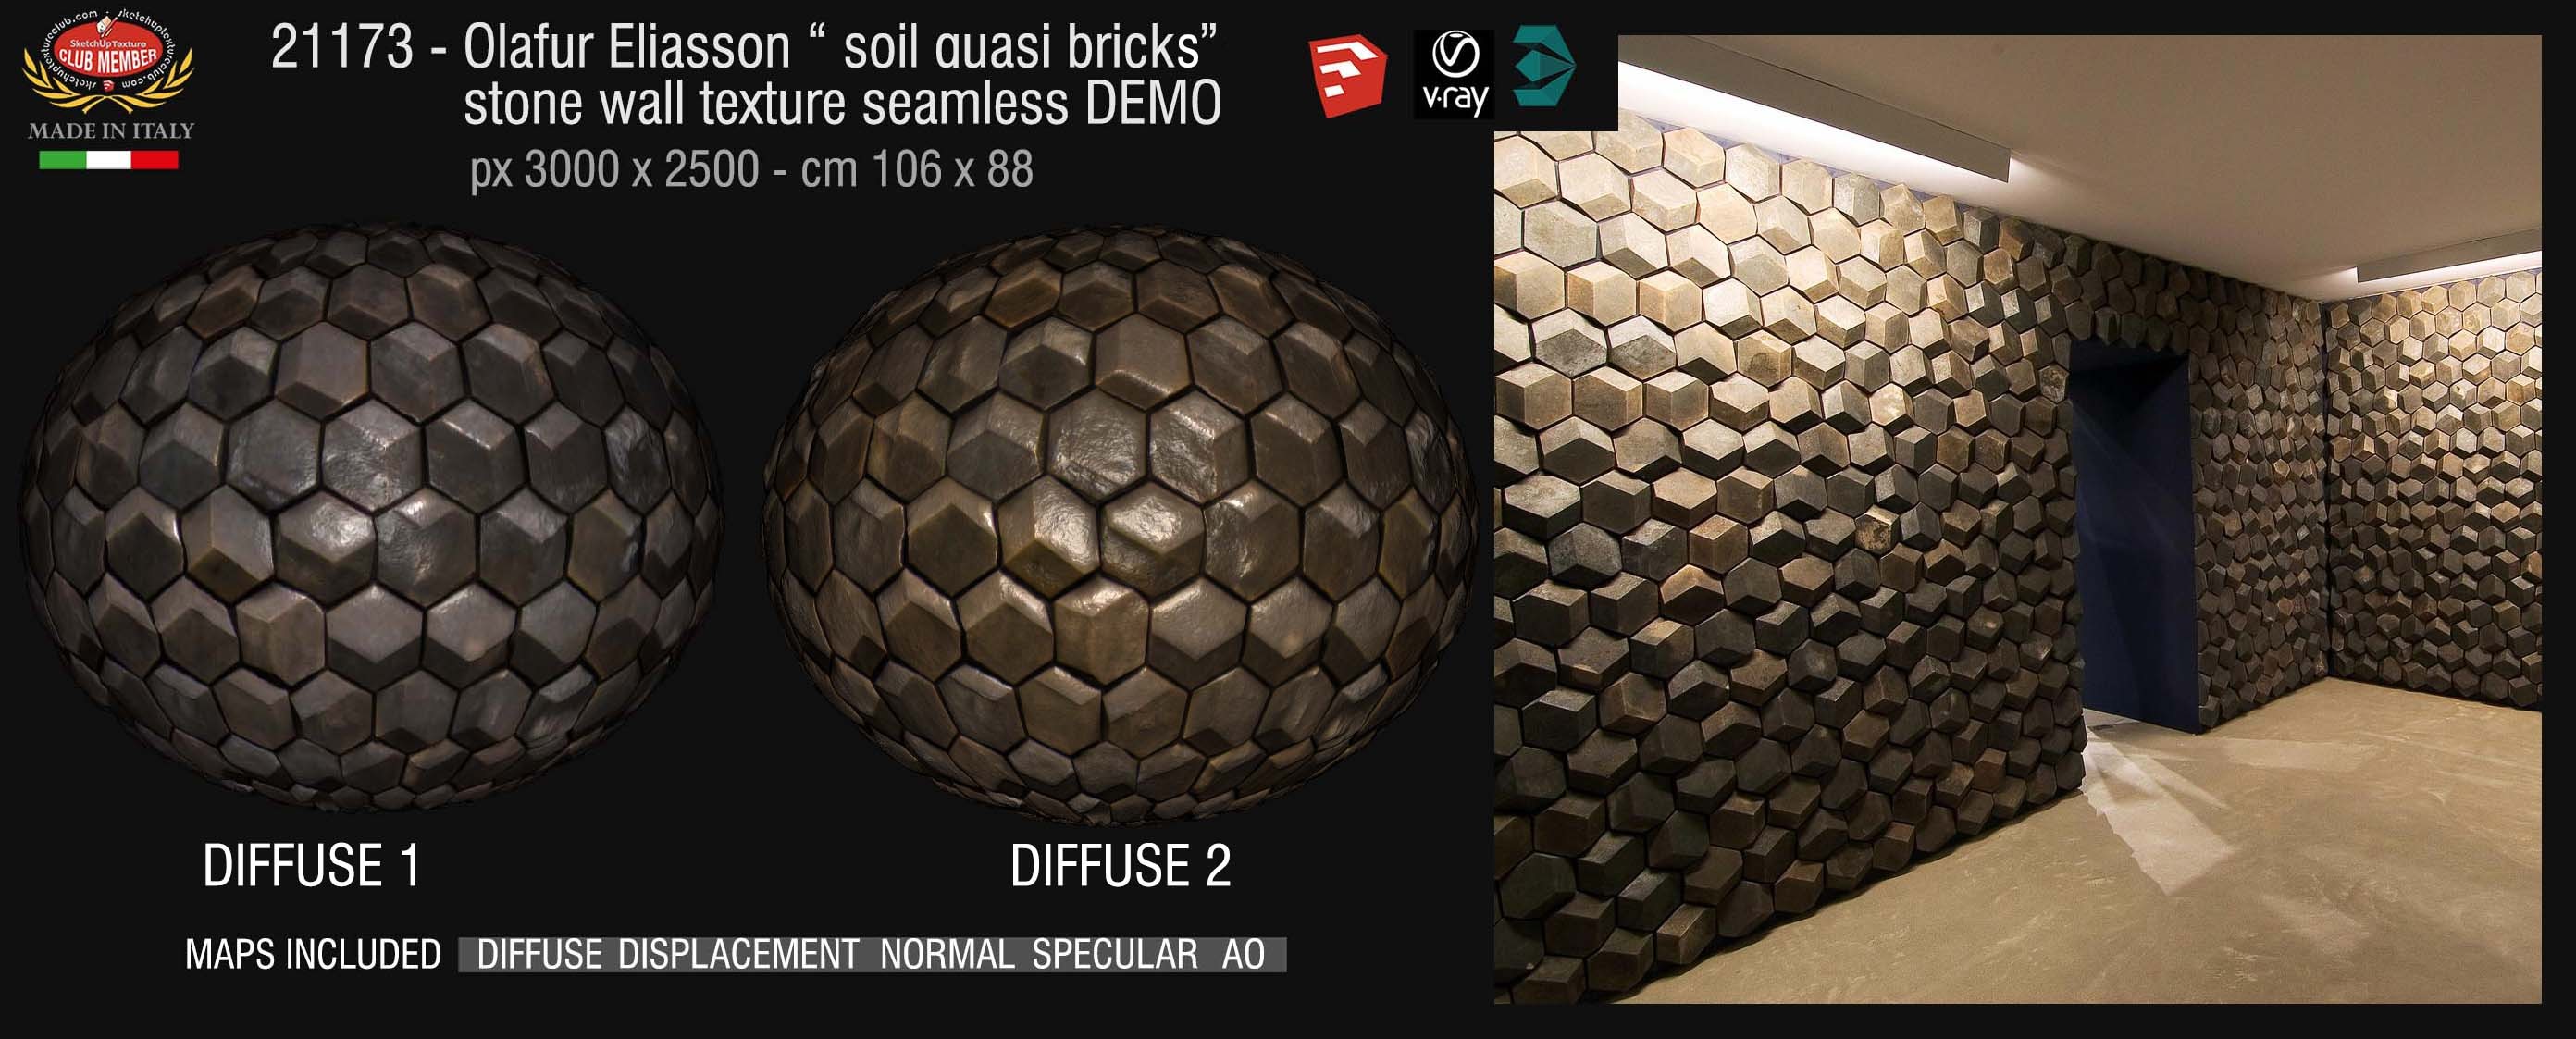 Olafur Eliasson "soil quasi brick" wall stone texture + maps demo